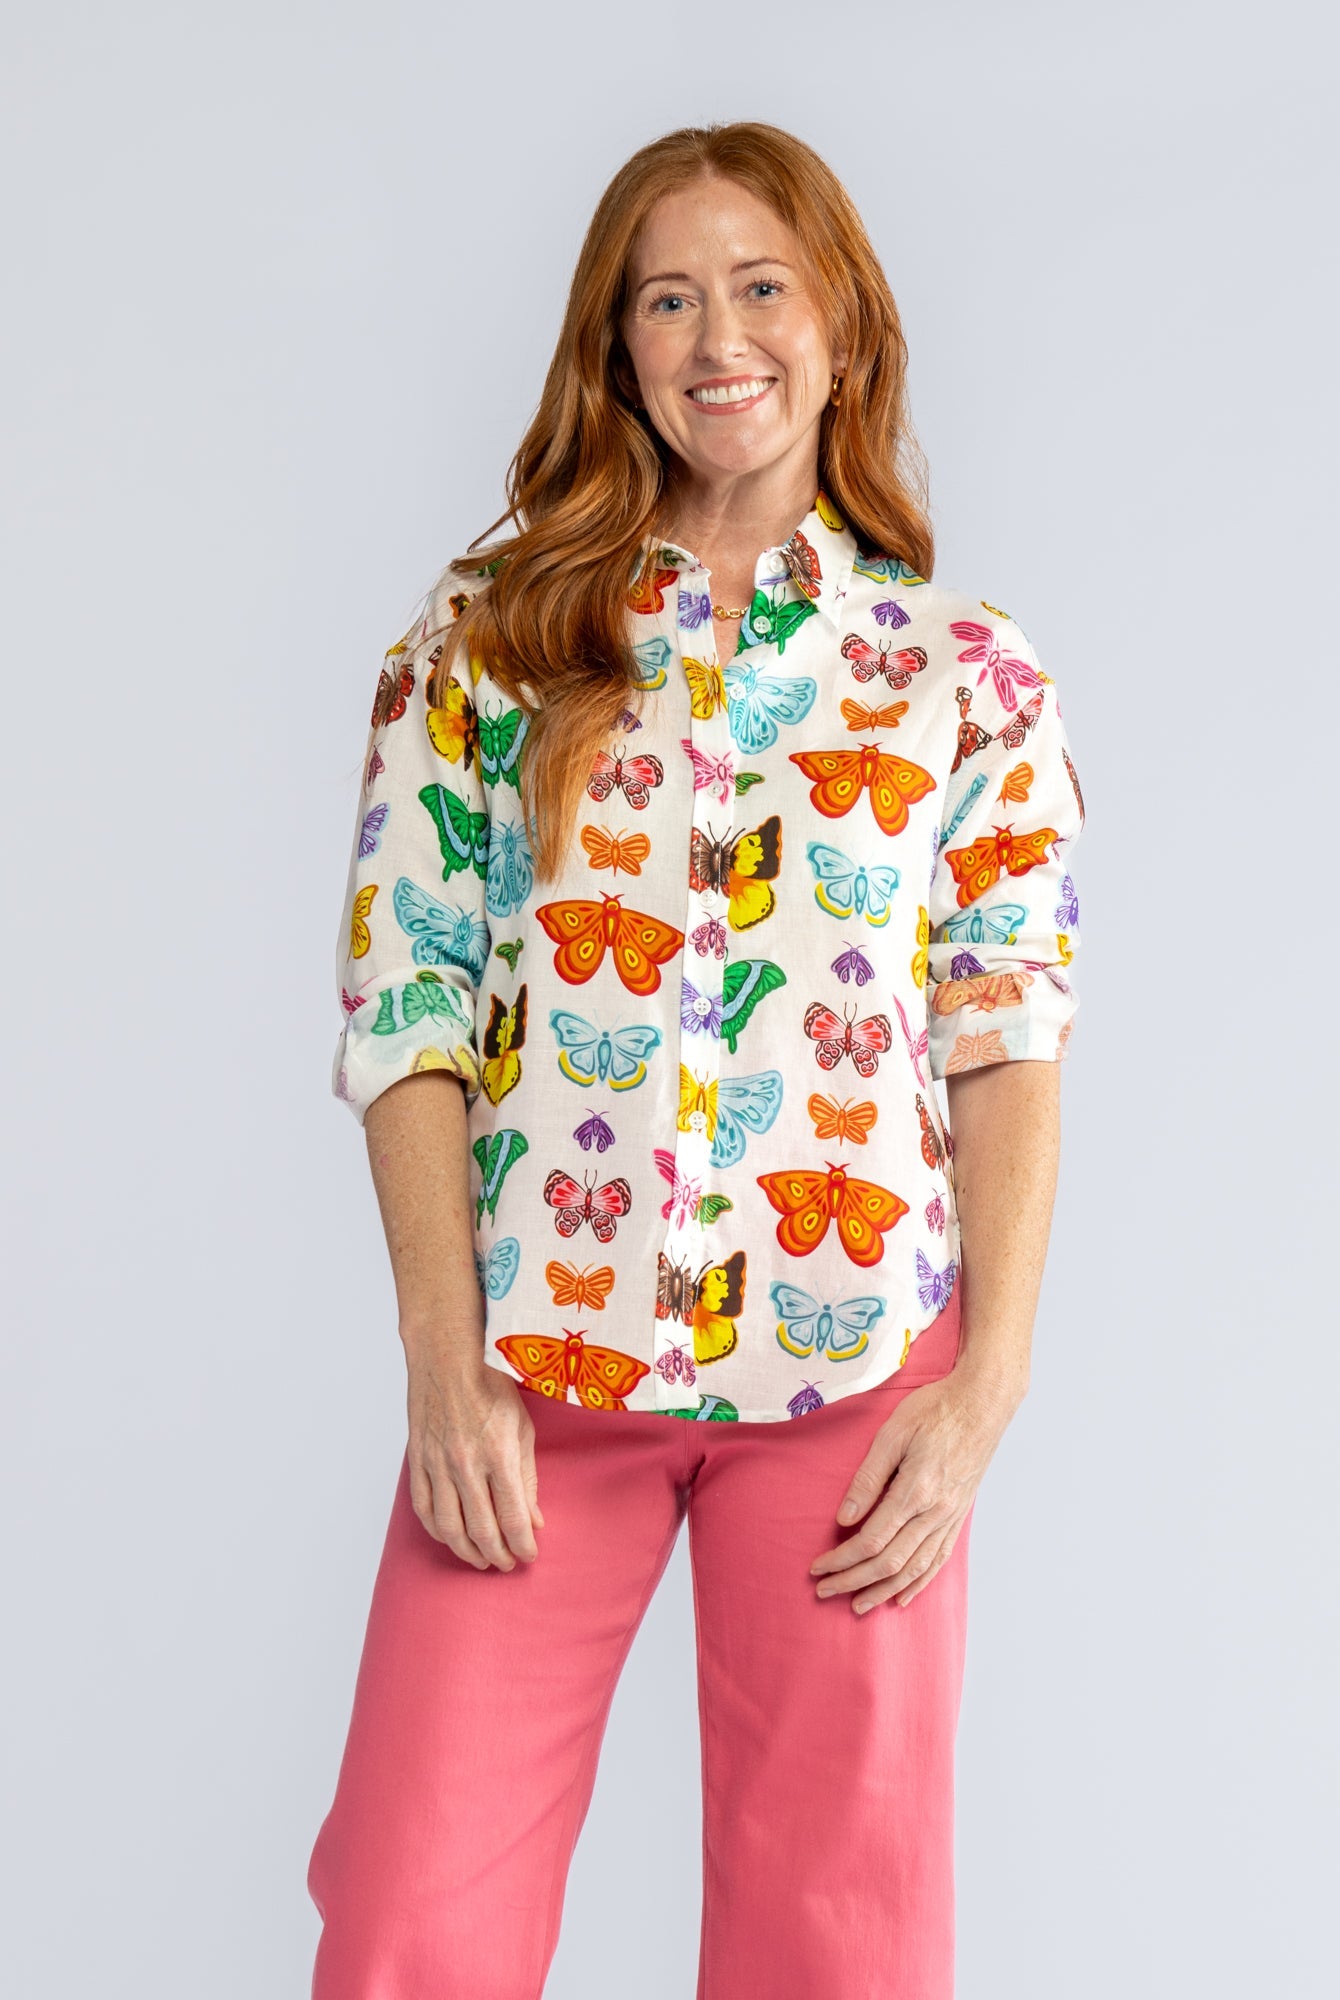 DAWN shirt Butterflies and Moths - Lesley Evers-Best Seller-blouse-butterflies